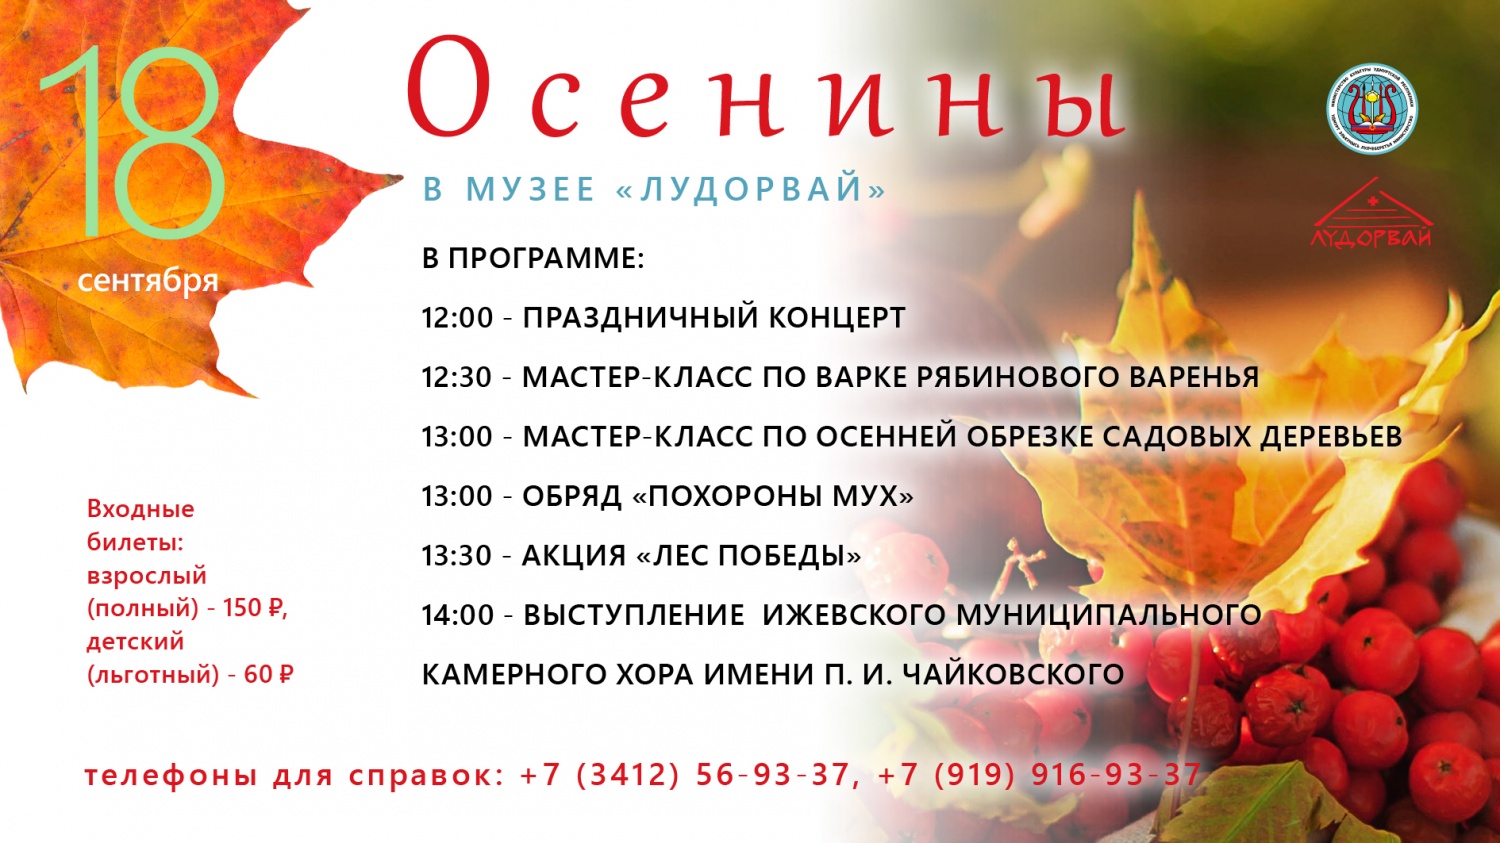 18 сентября приглашаем вас на "Осенины" в музей "Лудорвай"!